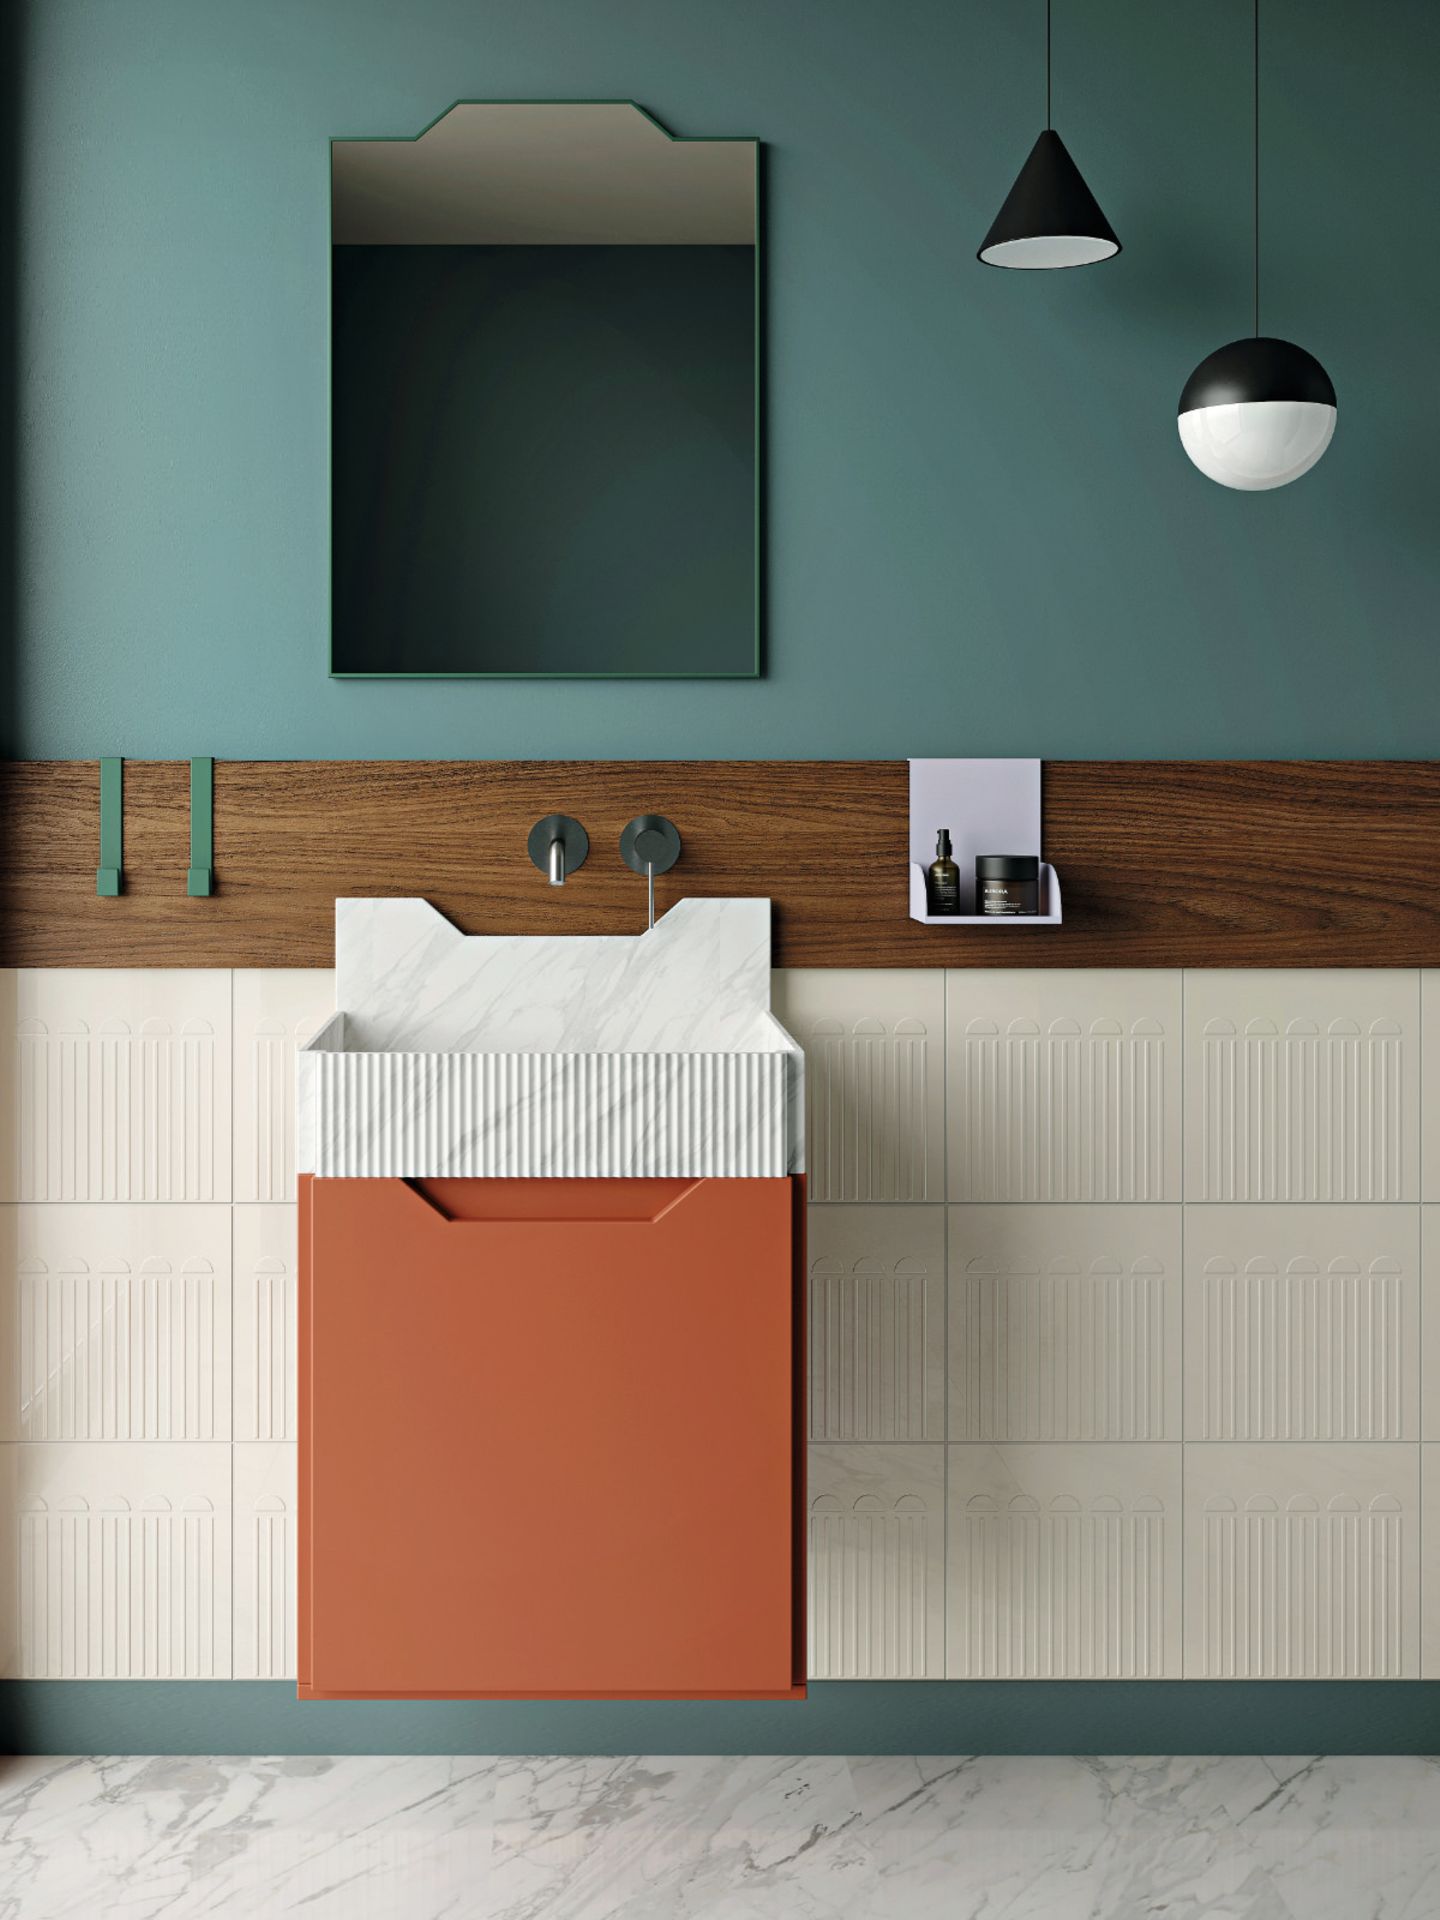 Von Pop-Art inspiriertes Badezimmer mit der Bad-Kollektion "Frieze" vom Architektenduo Marcante Testa